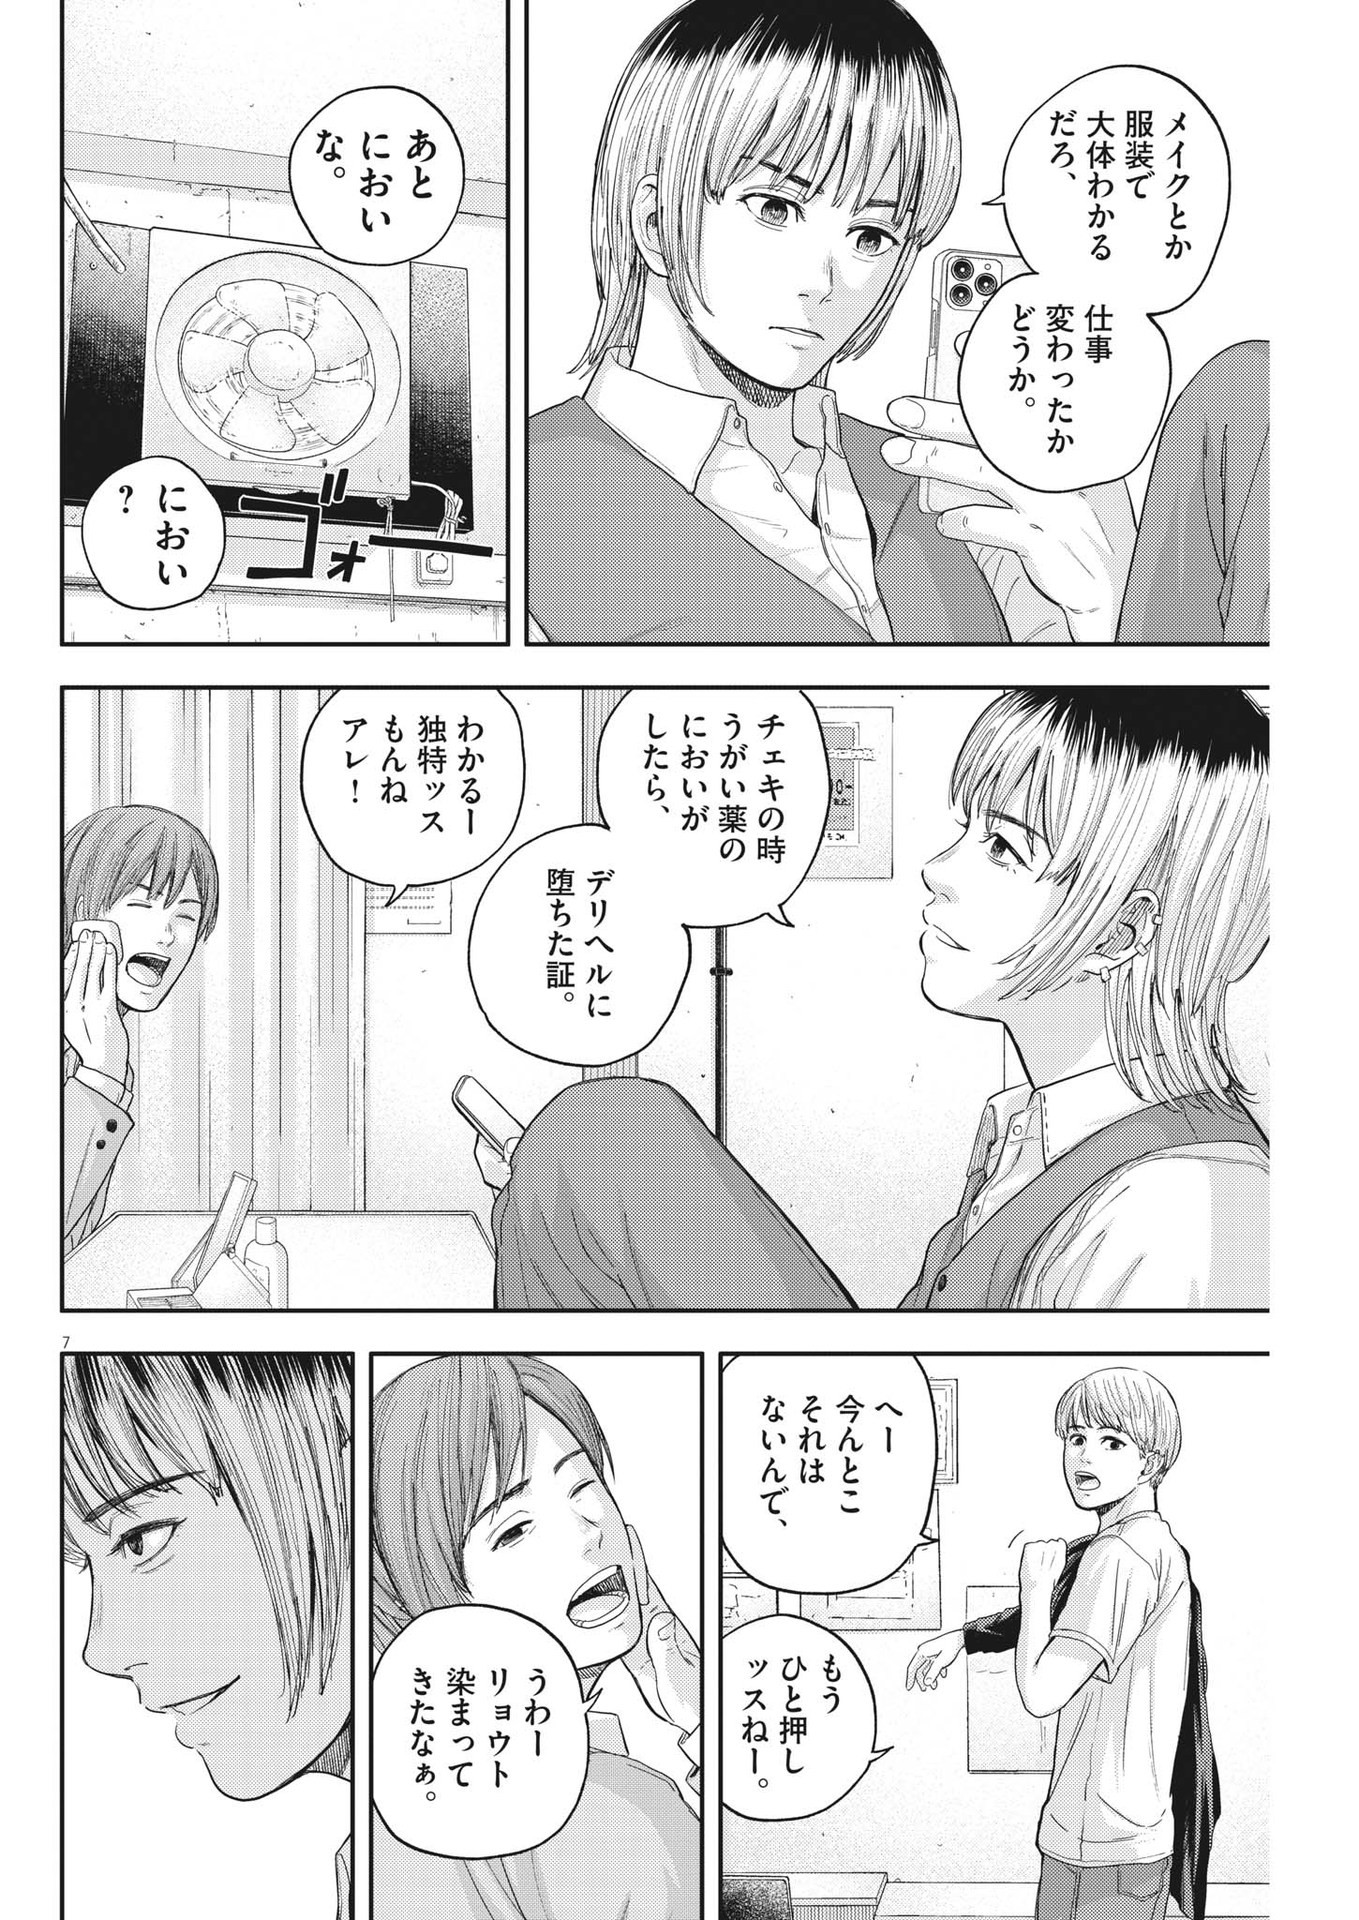 Yumenashi-sensei no Shinroshidou - Chapter 12 - Page 8